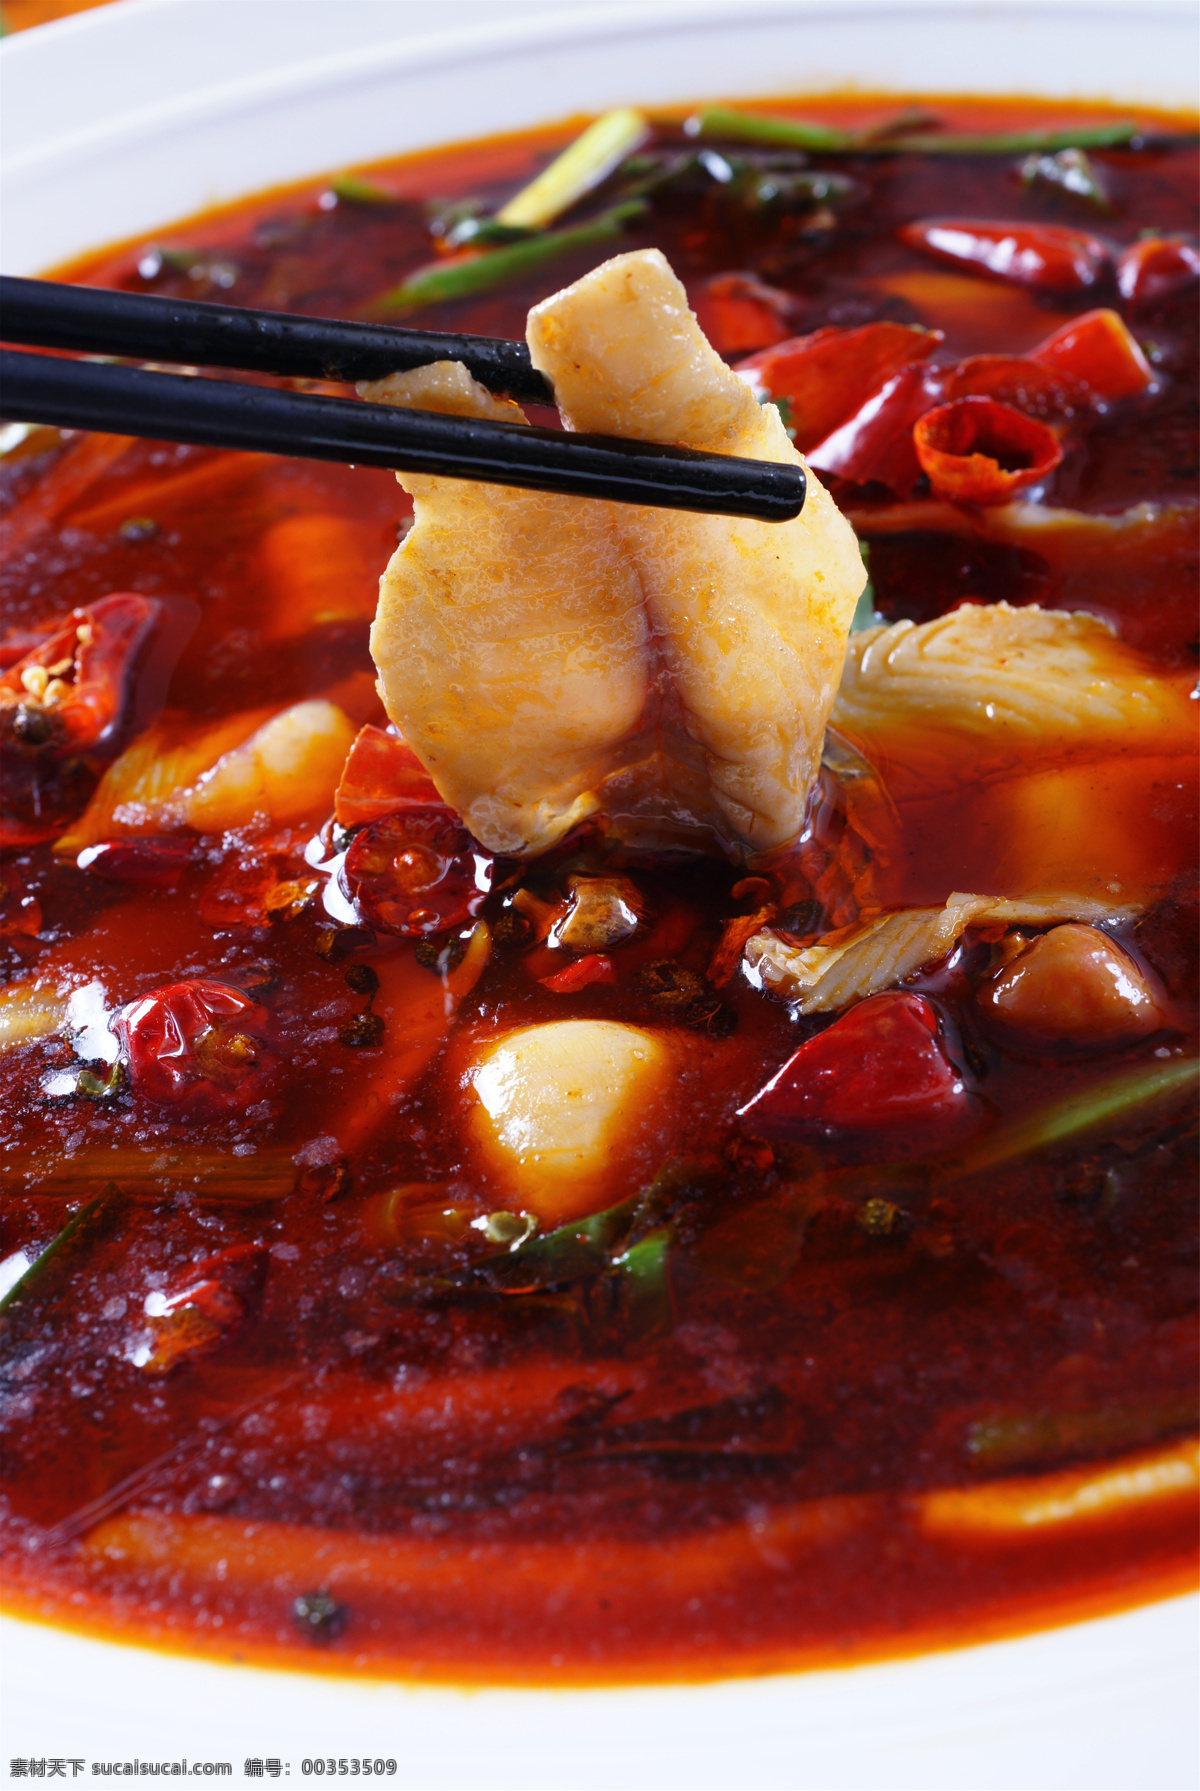 藤椒鱼 美食 传统美食 餐饮美食 高清菜谱用图